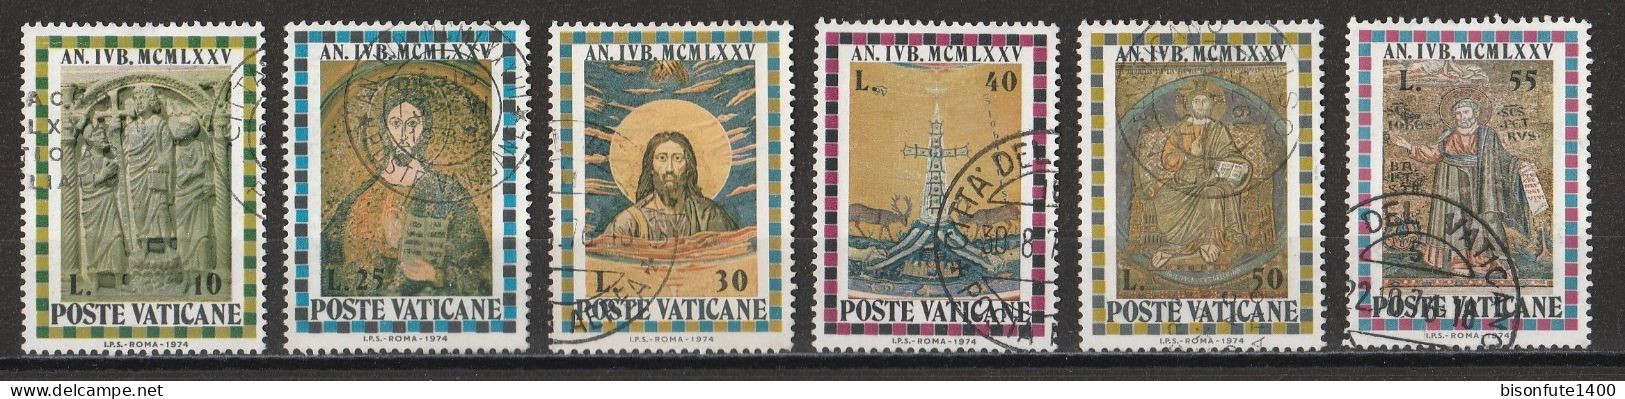 Vatican 1975 : Timbres Yvert & Tellier N° 582 - 583 - 584 - 585 - 586 - 587 - 588 - 589 - 590 - 591 Et 592 Oblitérés. - Oblitérés